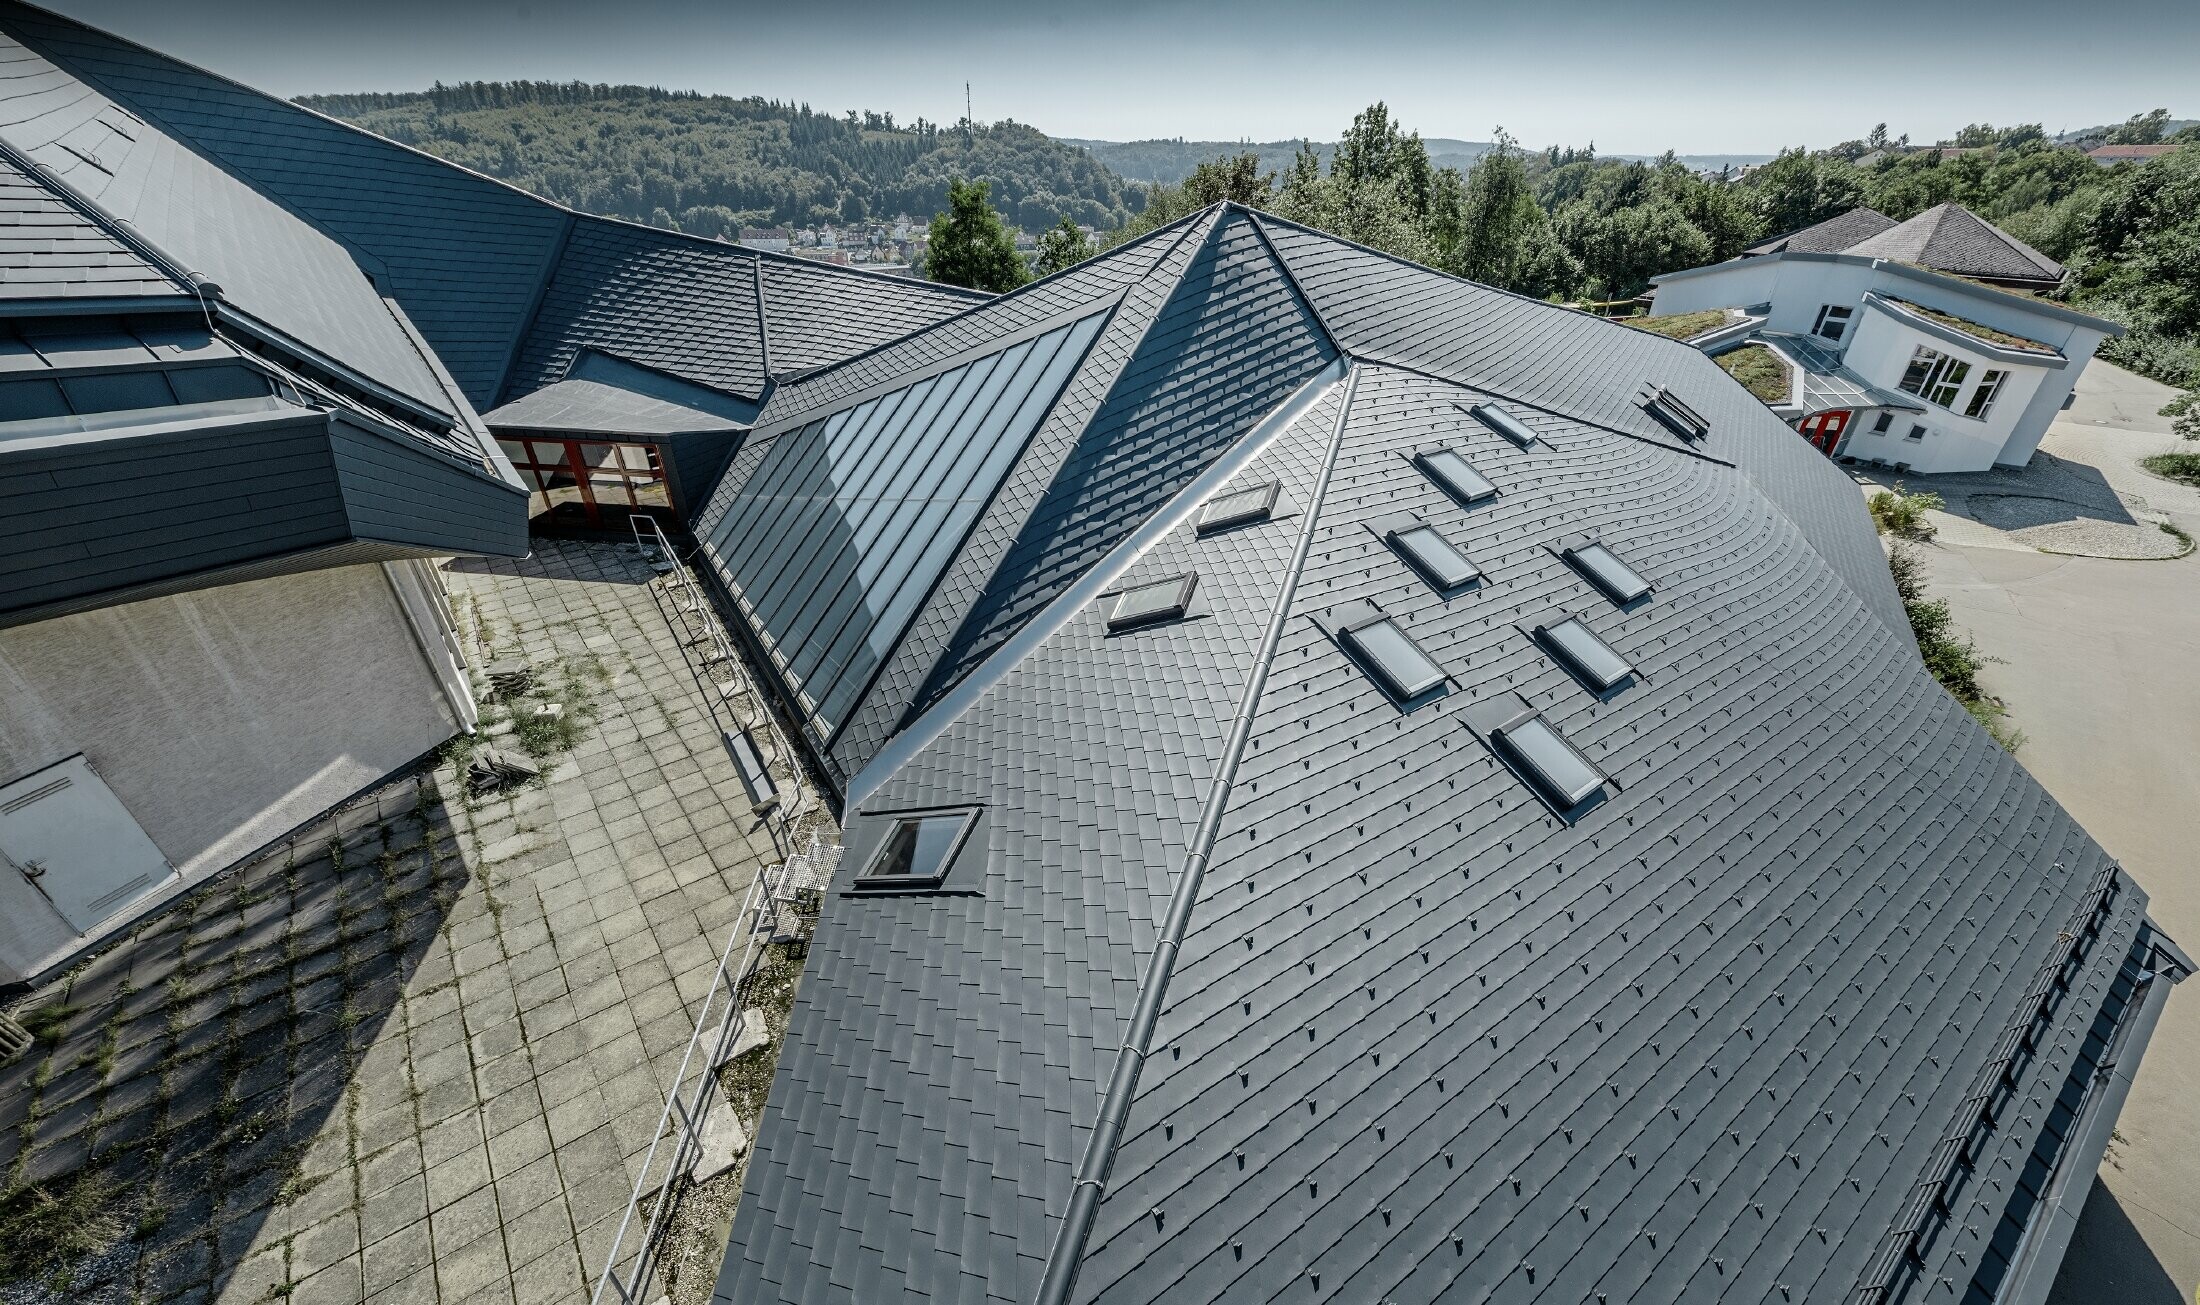 Vrije school in Heidenheim (Duitsland) met groot en onregelmatig dakvlak gerenoveerd met PREFA-dakschindels in antraciet